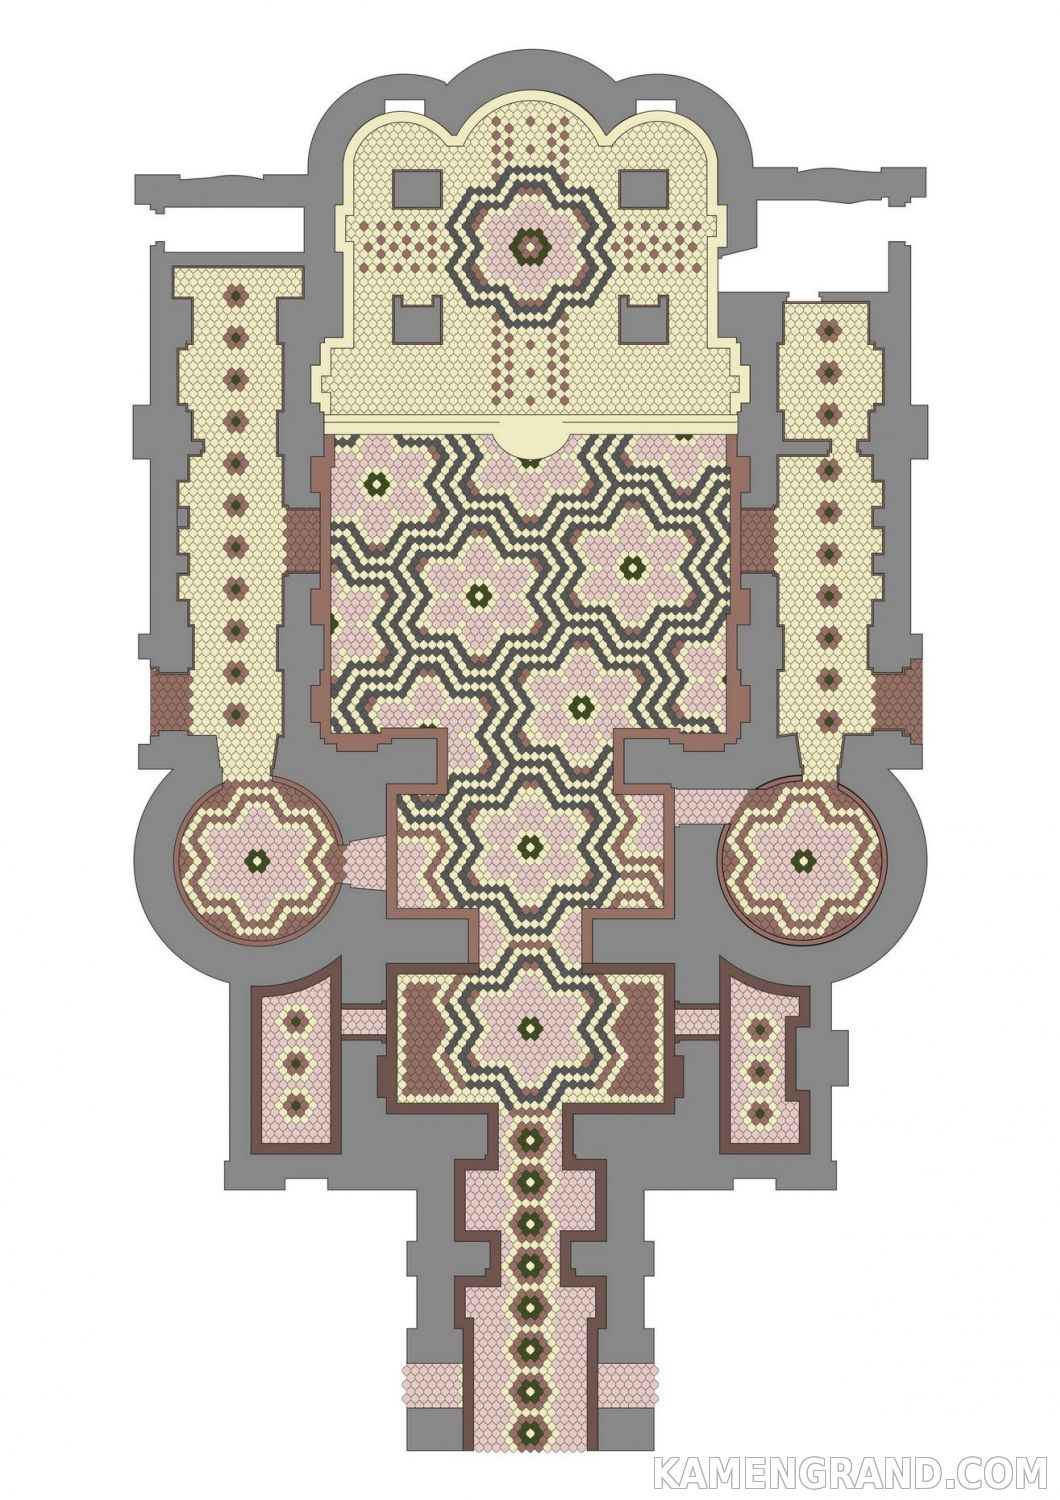 Проект пола для верхнего храма из гранитной плитки Византийская мозаика